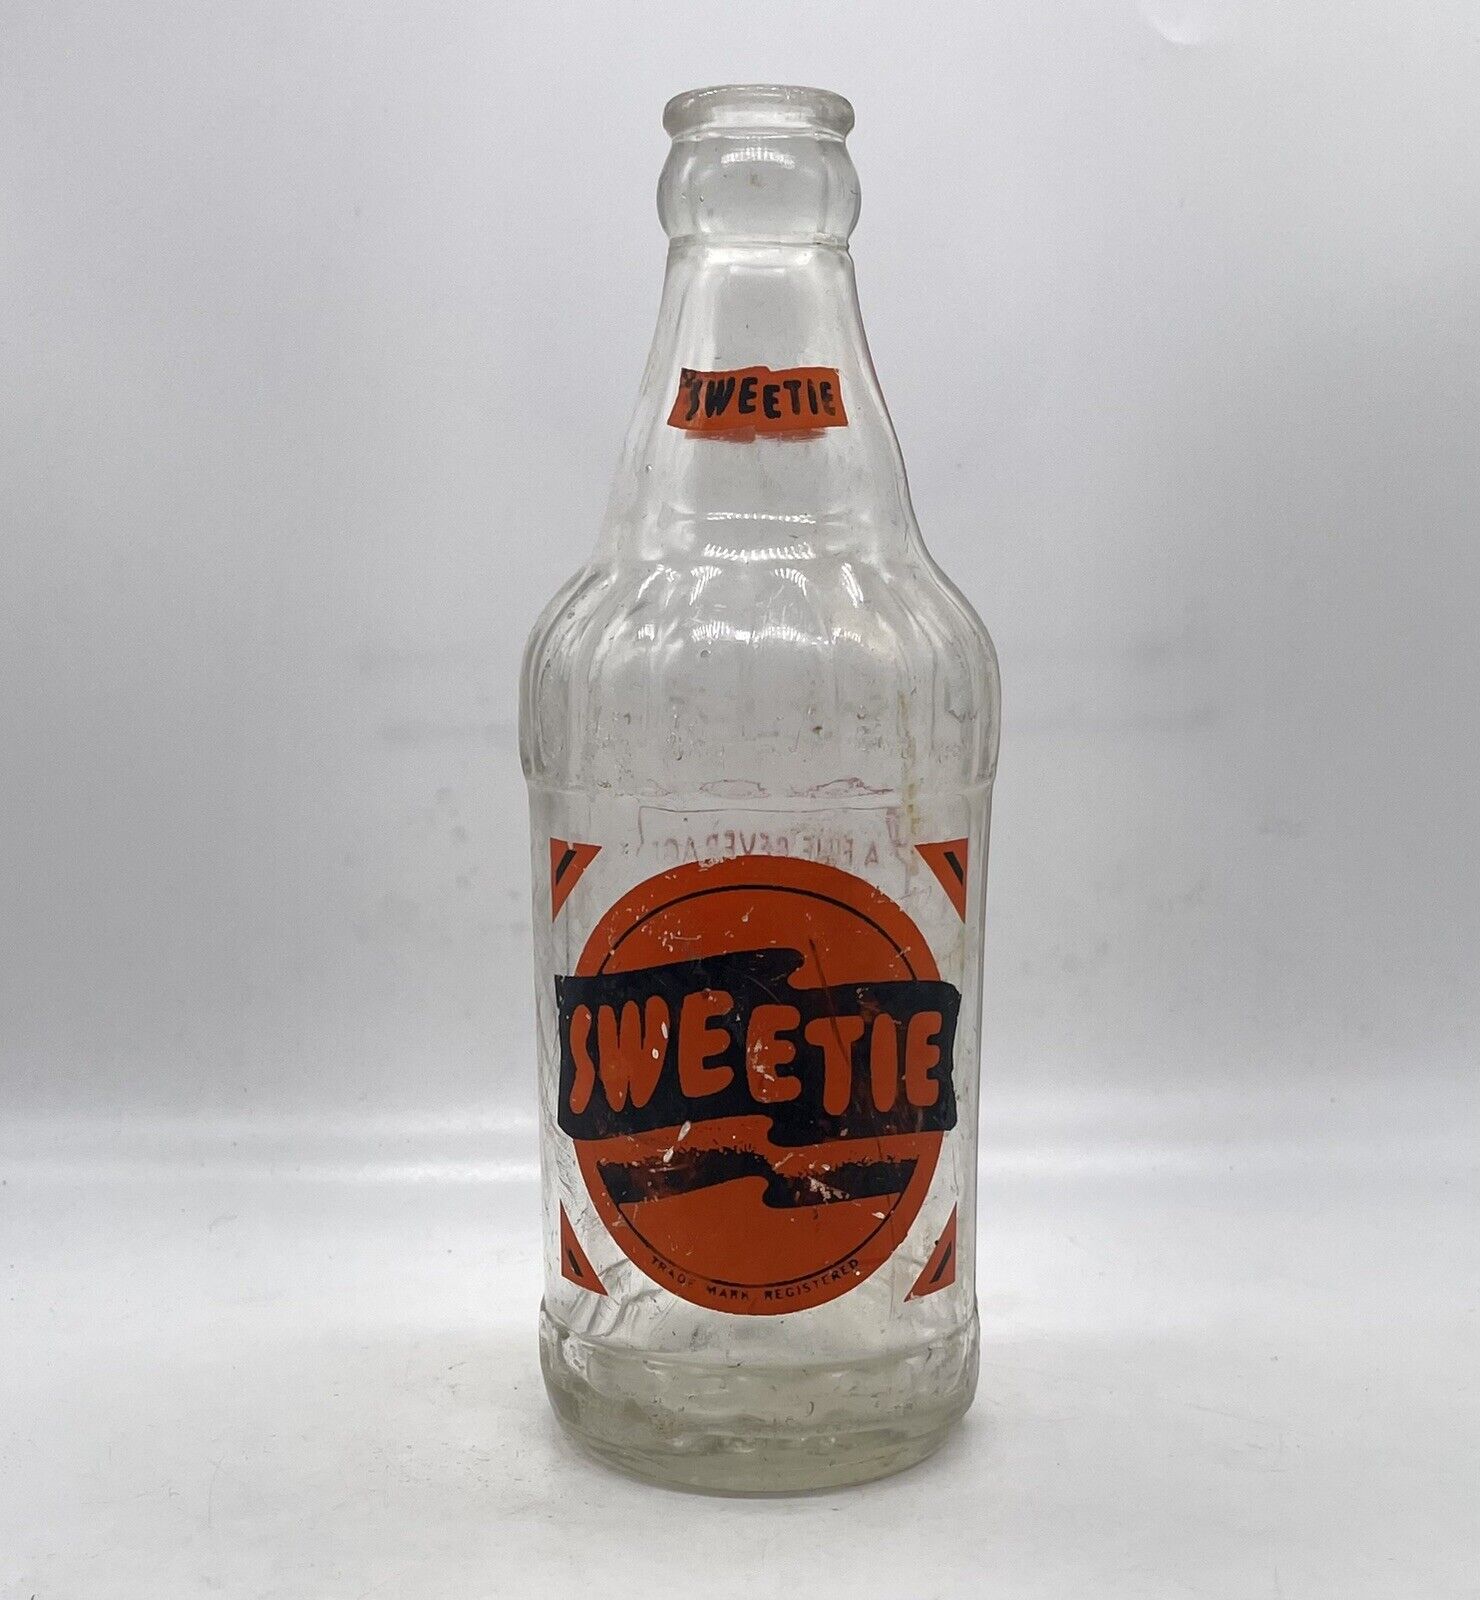 Vintage Sweetie Soda Bottle - Philadelphia PA Painted Label Clear Glass Bottle R